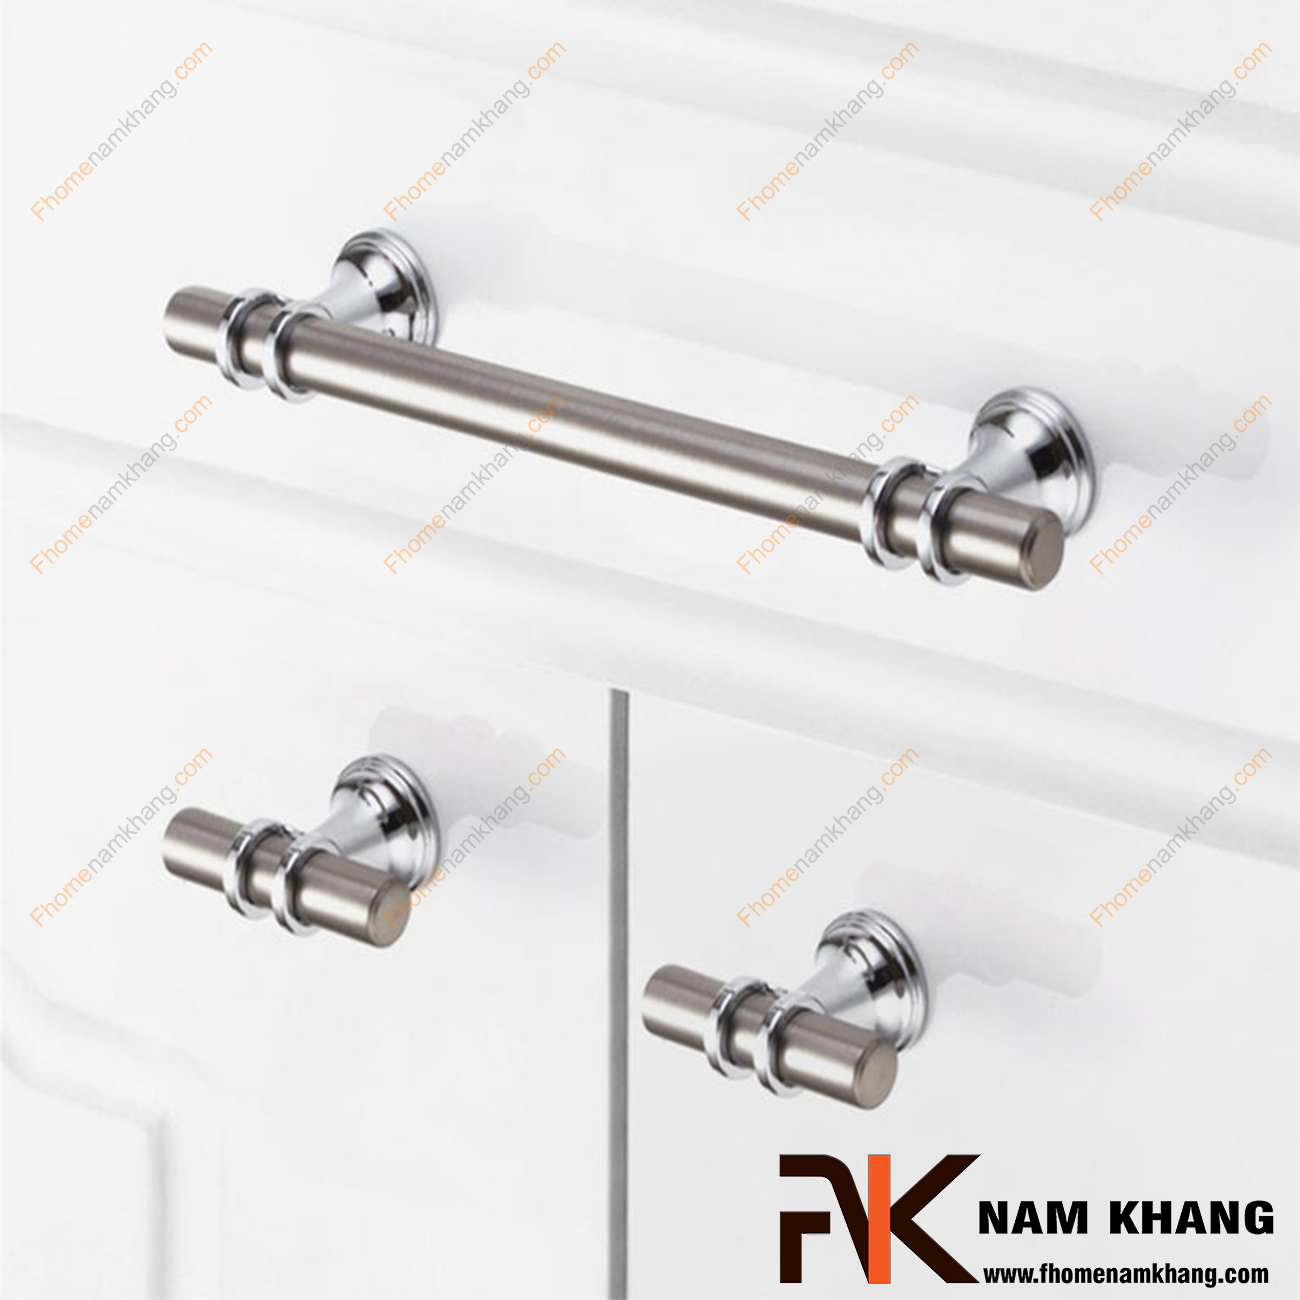 Núm cửa tủ dạng chữ T màu ghi bạc NK207-GB là sản phẩm núm nắm tủ đặc trưng chuyên dùng cho các dòng tủ bếp, ngăn kéo, ngăn bàn, tủ nội thất